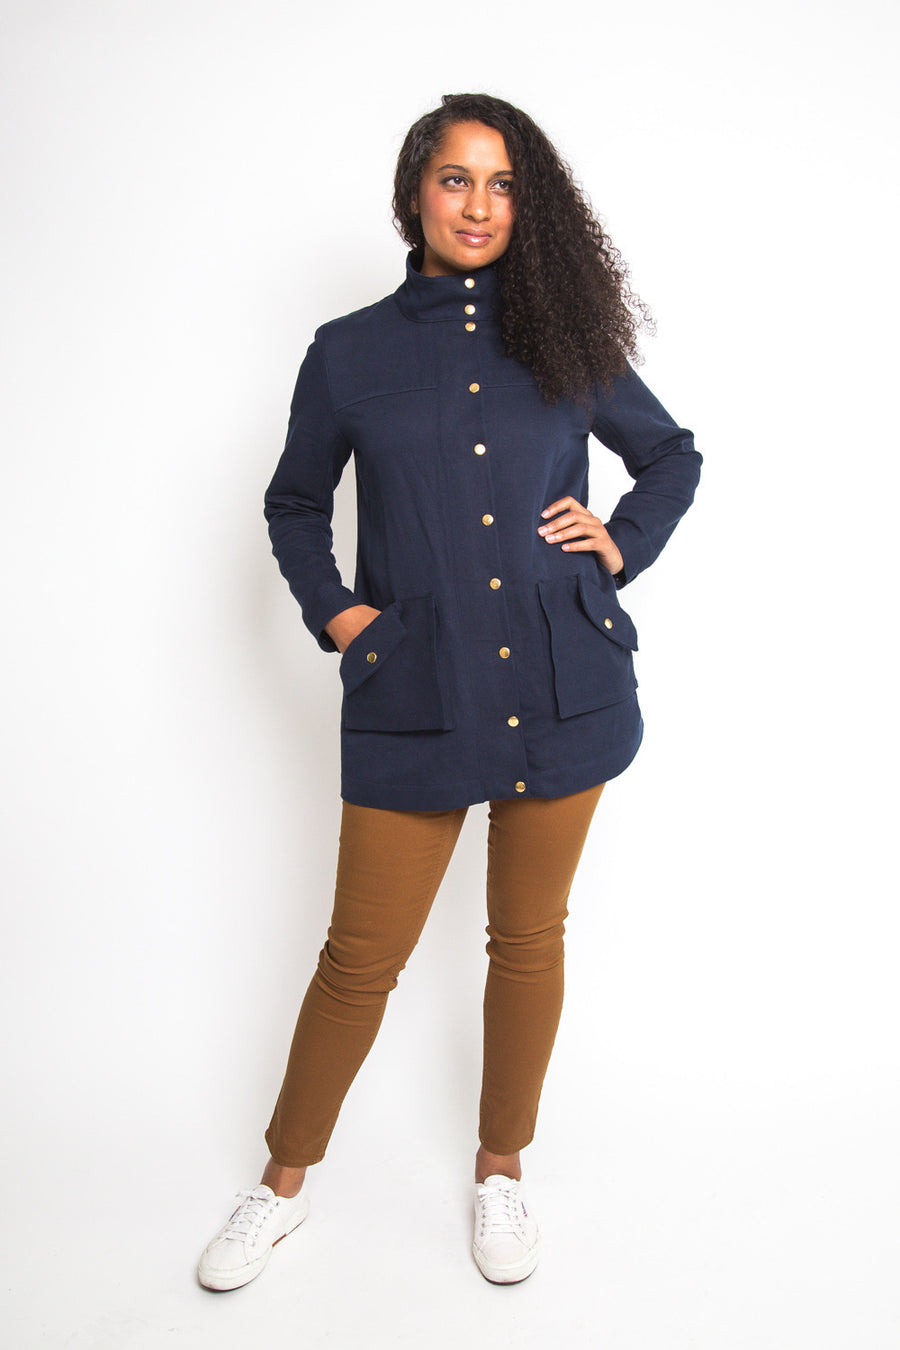 Kelly Anorak // Jacket sewing pattern // Closet Core Patterns